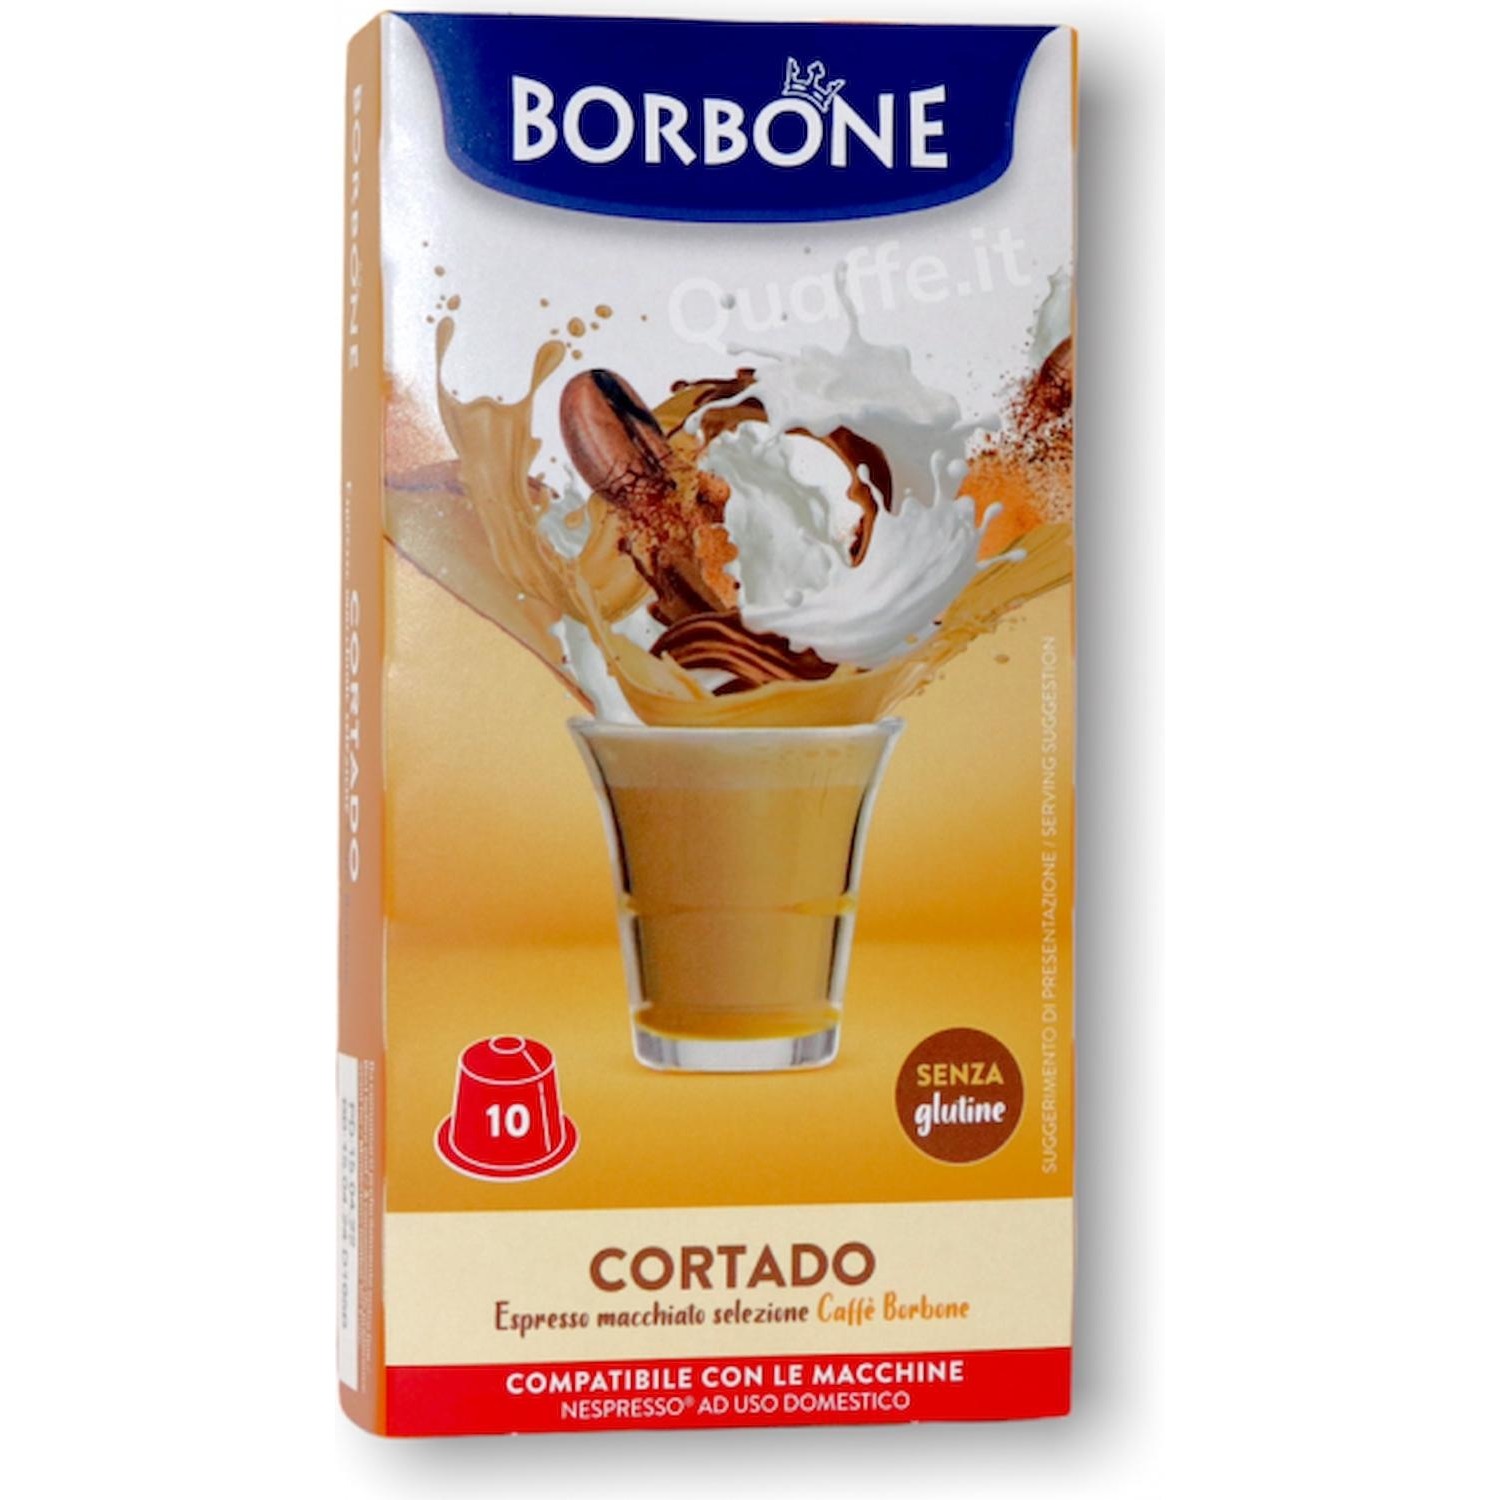 Immagine per Capsule Caffe' Borbone Cortado Macchiato 10 capsule - Compatibile Nespresso da DIMOStore